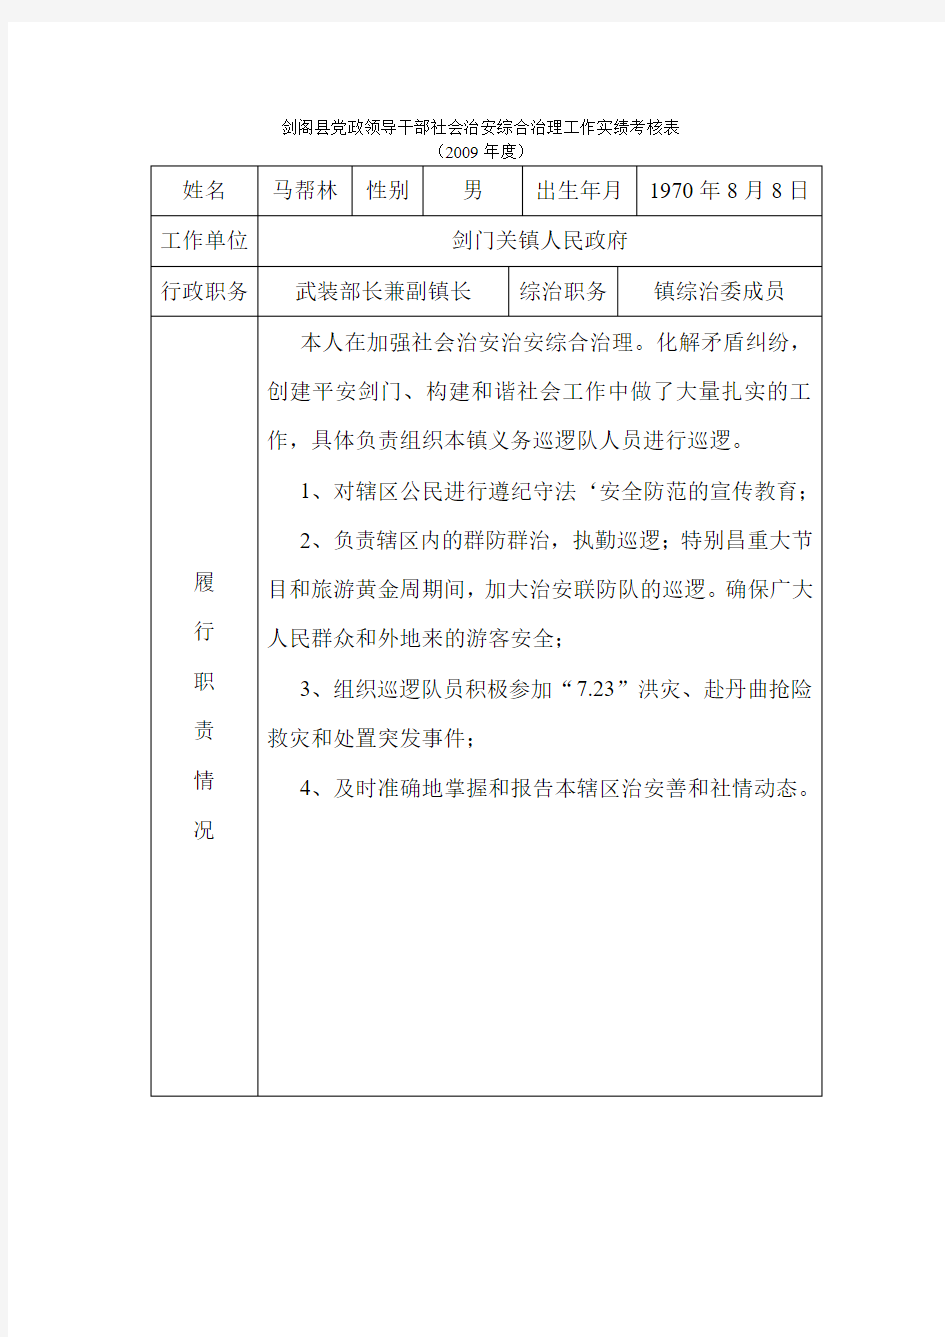 剑阁县党政领导干部社会治安综合治理工作实绩考核表